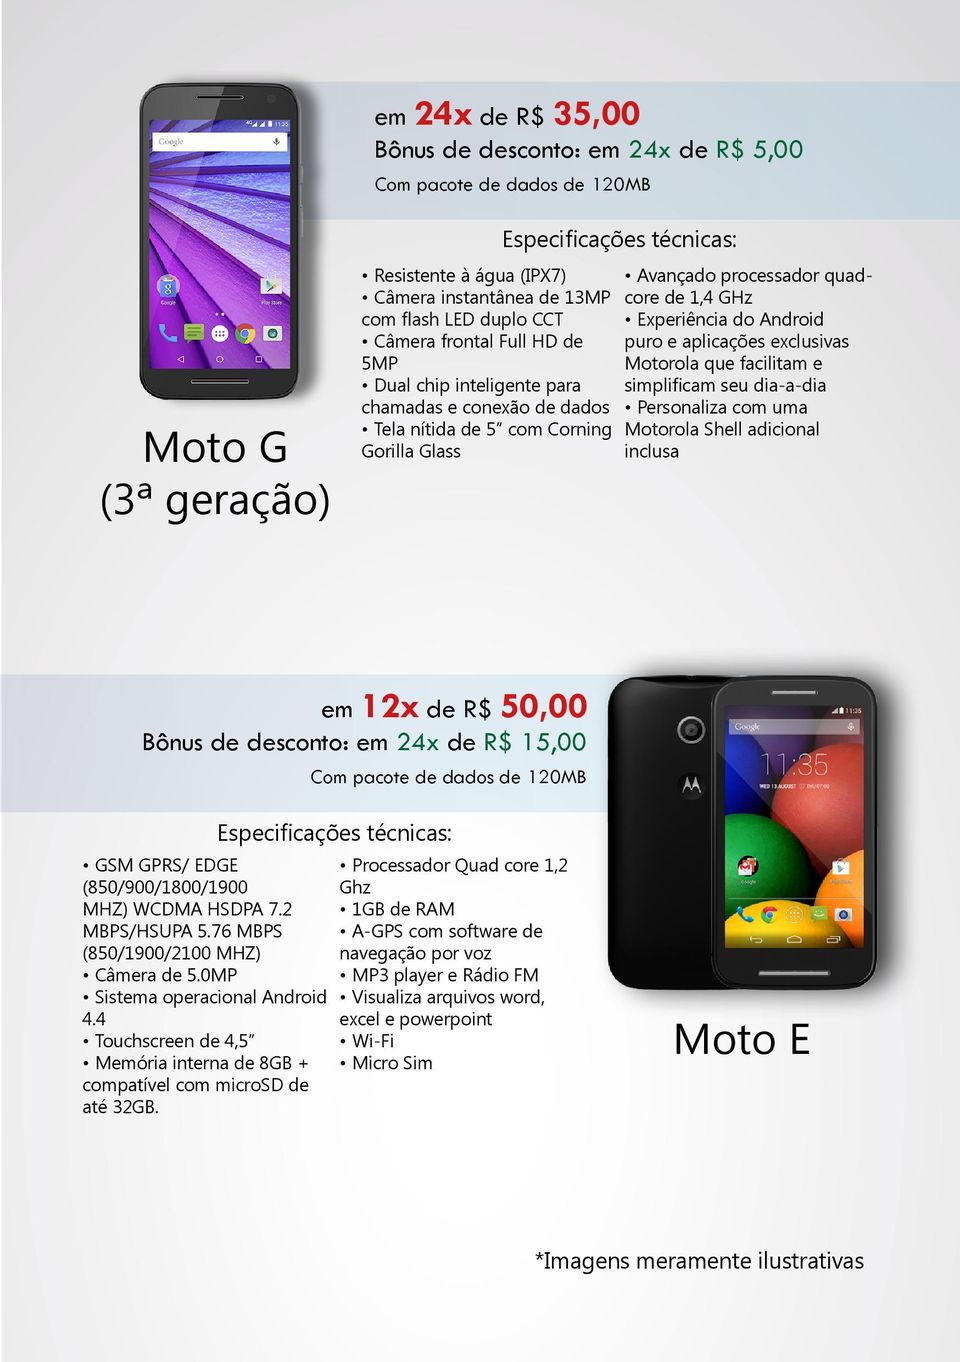 exclusivas Motorola que facilitam e simplificam seu dia-a-dia Personaliza com uma Motorola Shell adicional inclusa em 12x de R$ 50,00 Bônus de desconto: em 24x de R$ 15,00 Com pacote de dados de